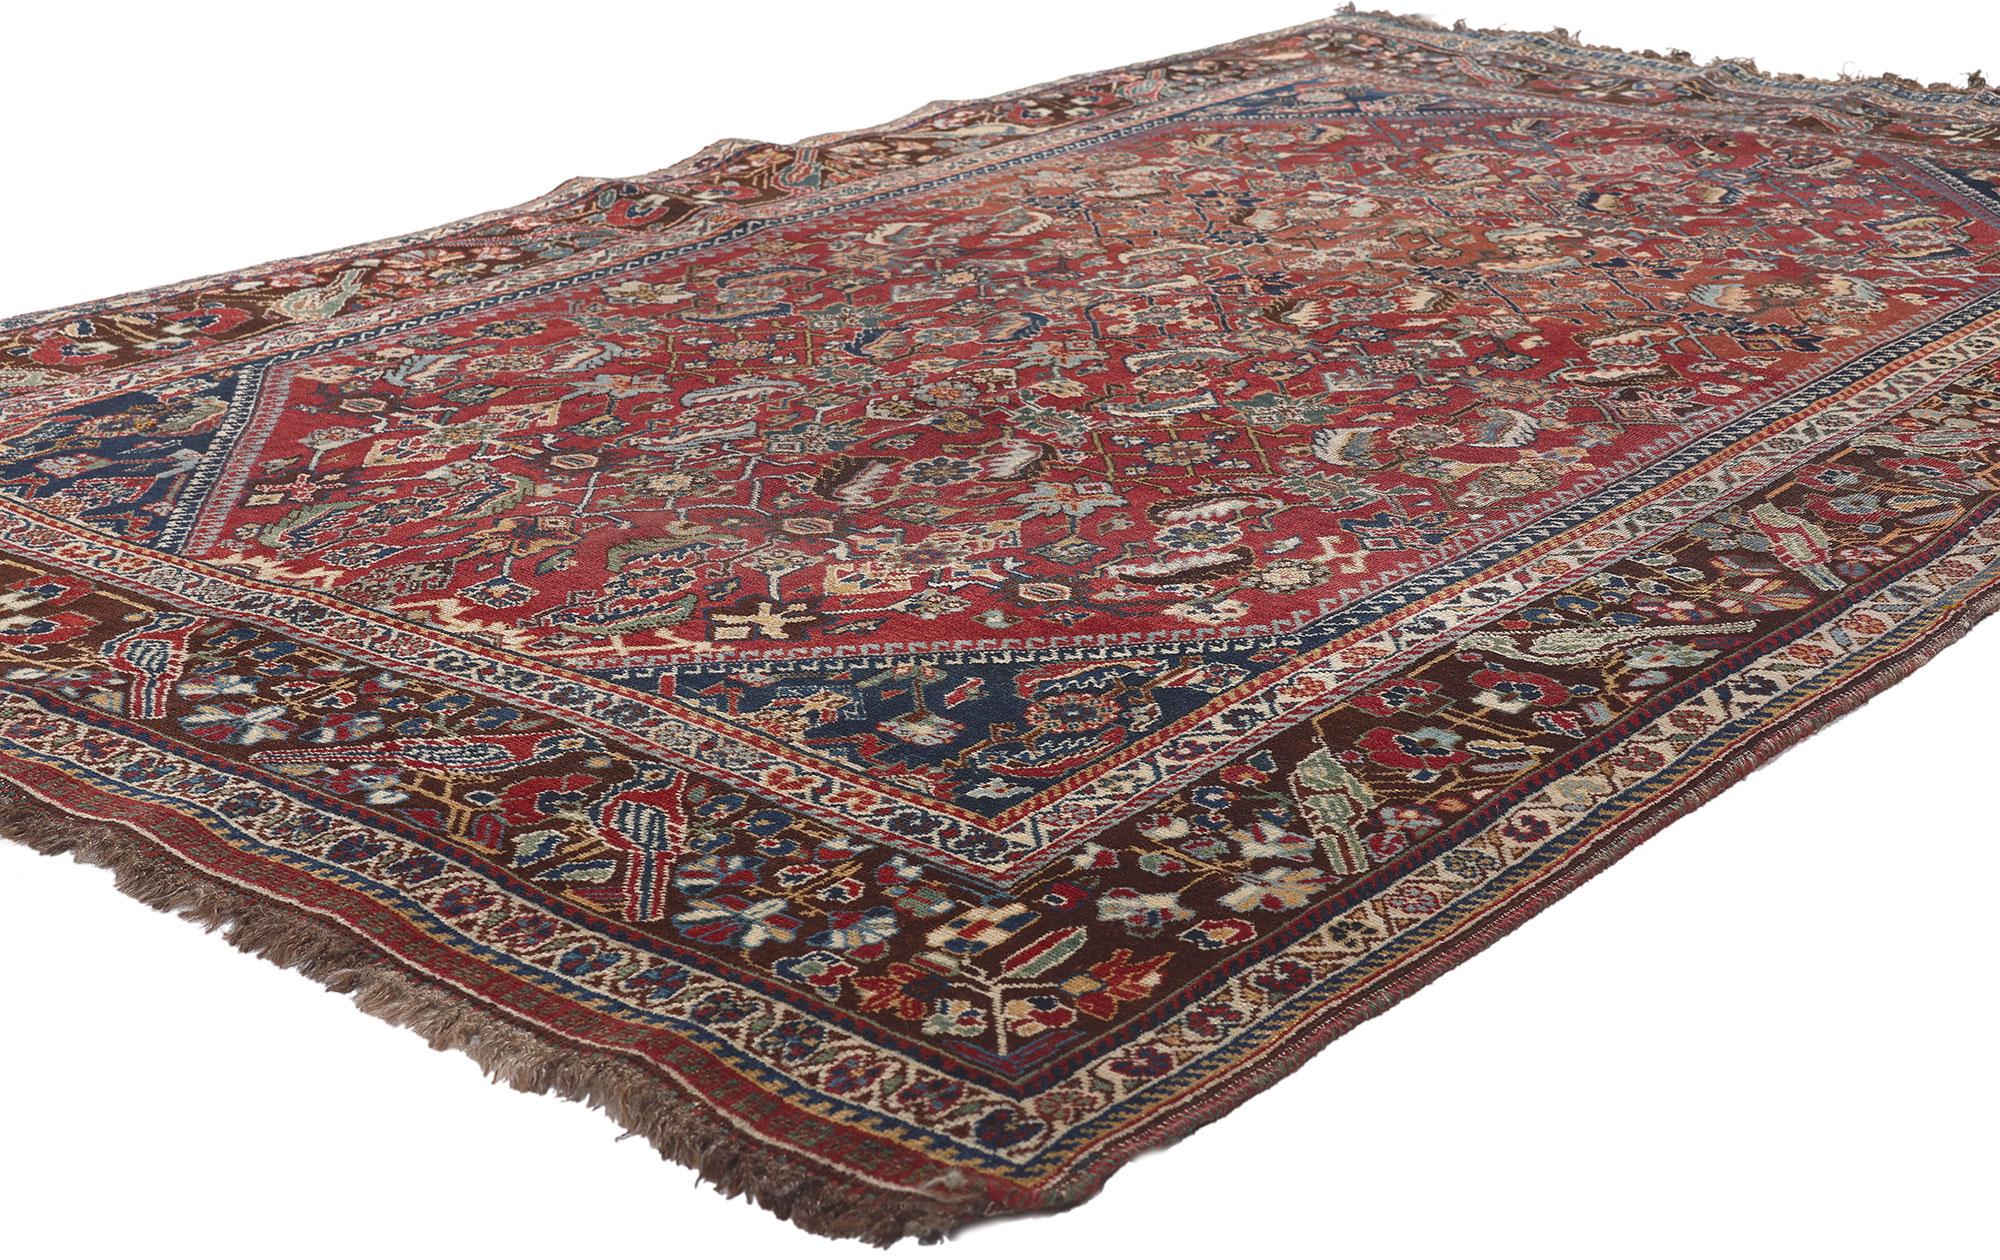 78566 Antique Persian Shiraz Rug, 04'07 x 07'03.
Emanant d'une sensibilité traditionnelle et d'un style intemporel avec des détails et une texture incroyables, ce tapis antique persan Shiraz est une vision captivante de la beauté tissée. Le design